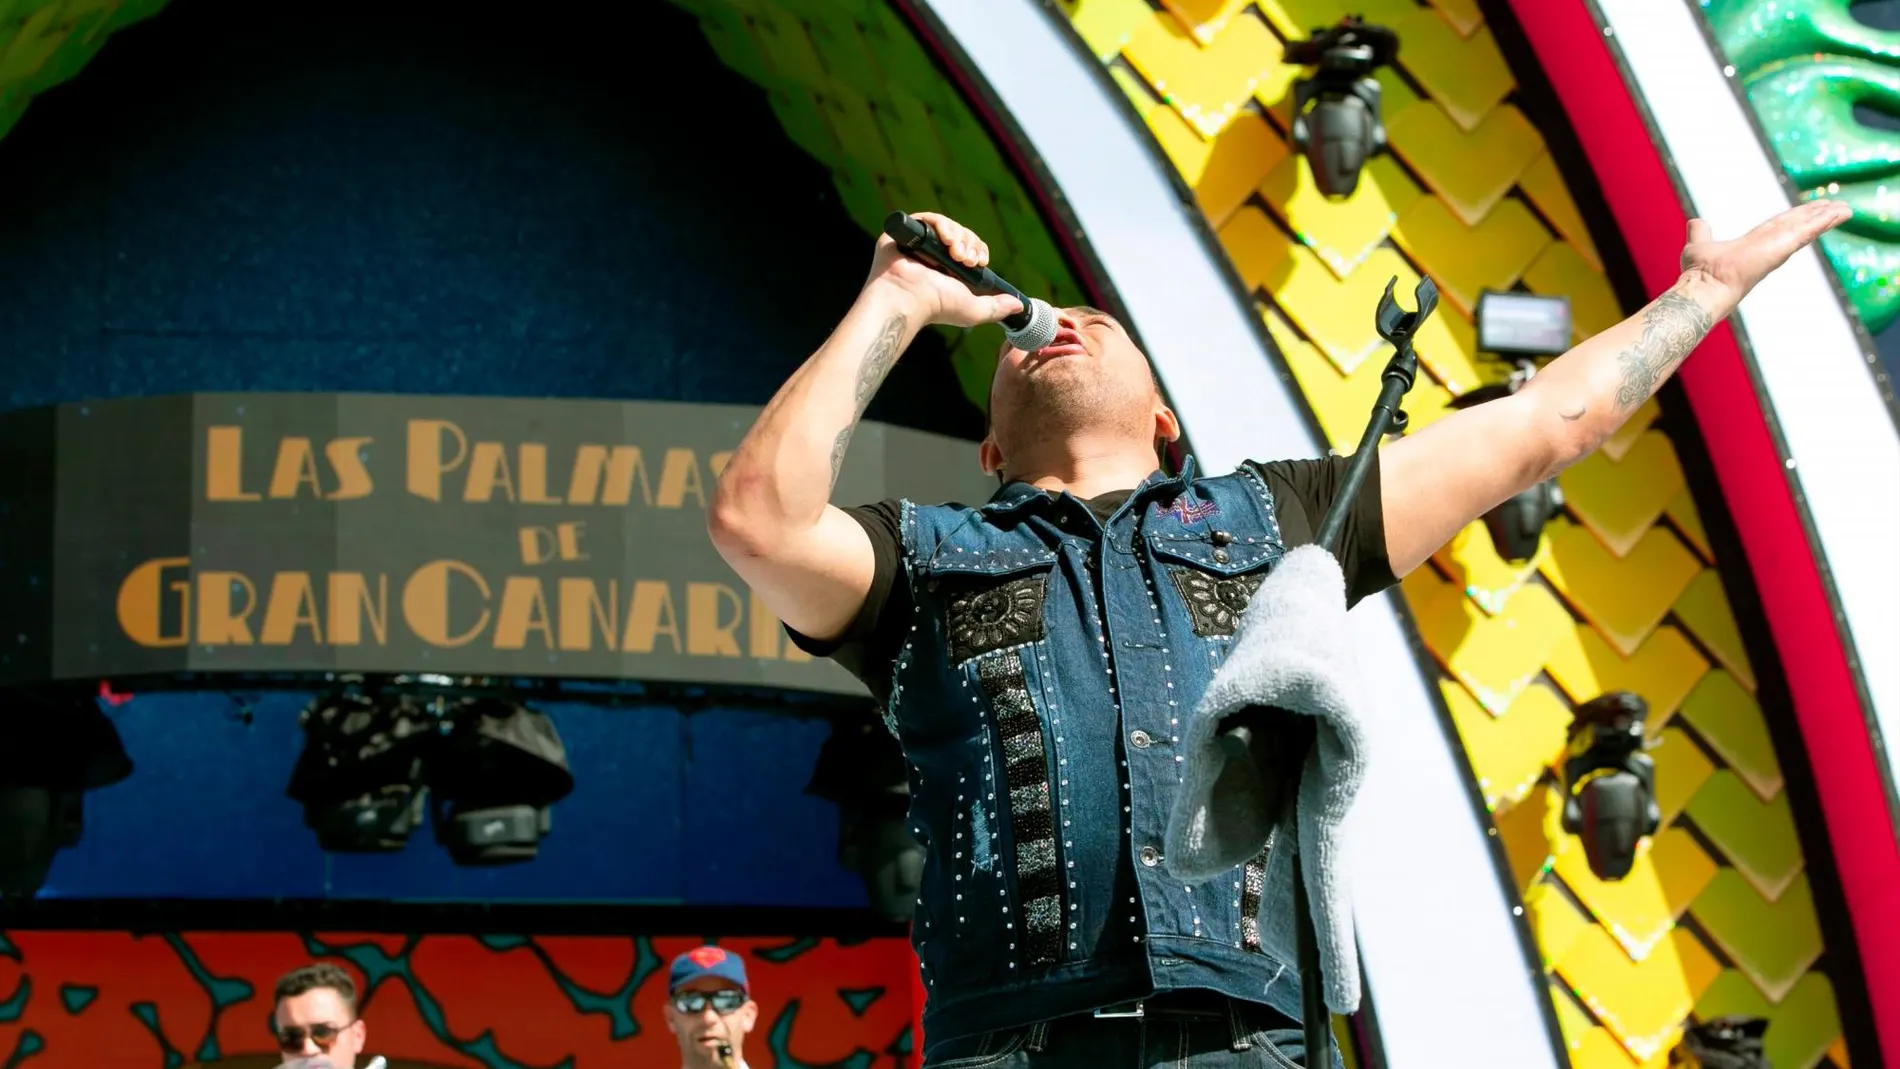 El cantante puertorriqueño Manny Manuel ha sido "desalojado del escenario"del Carnaval de Las Palmas de Gran Canaria al ser "incapaz de ofrecer en condiciones más allá de una canción"en un concierto que tenía